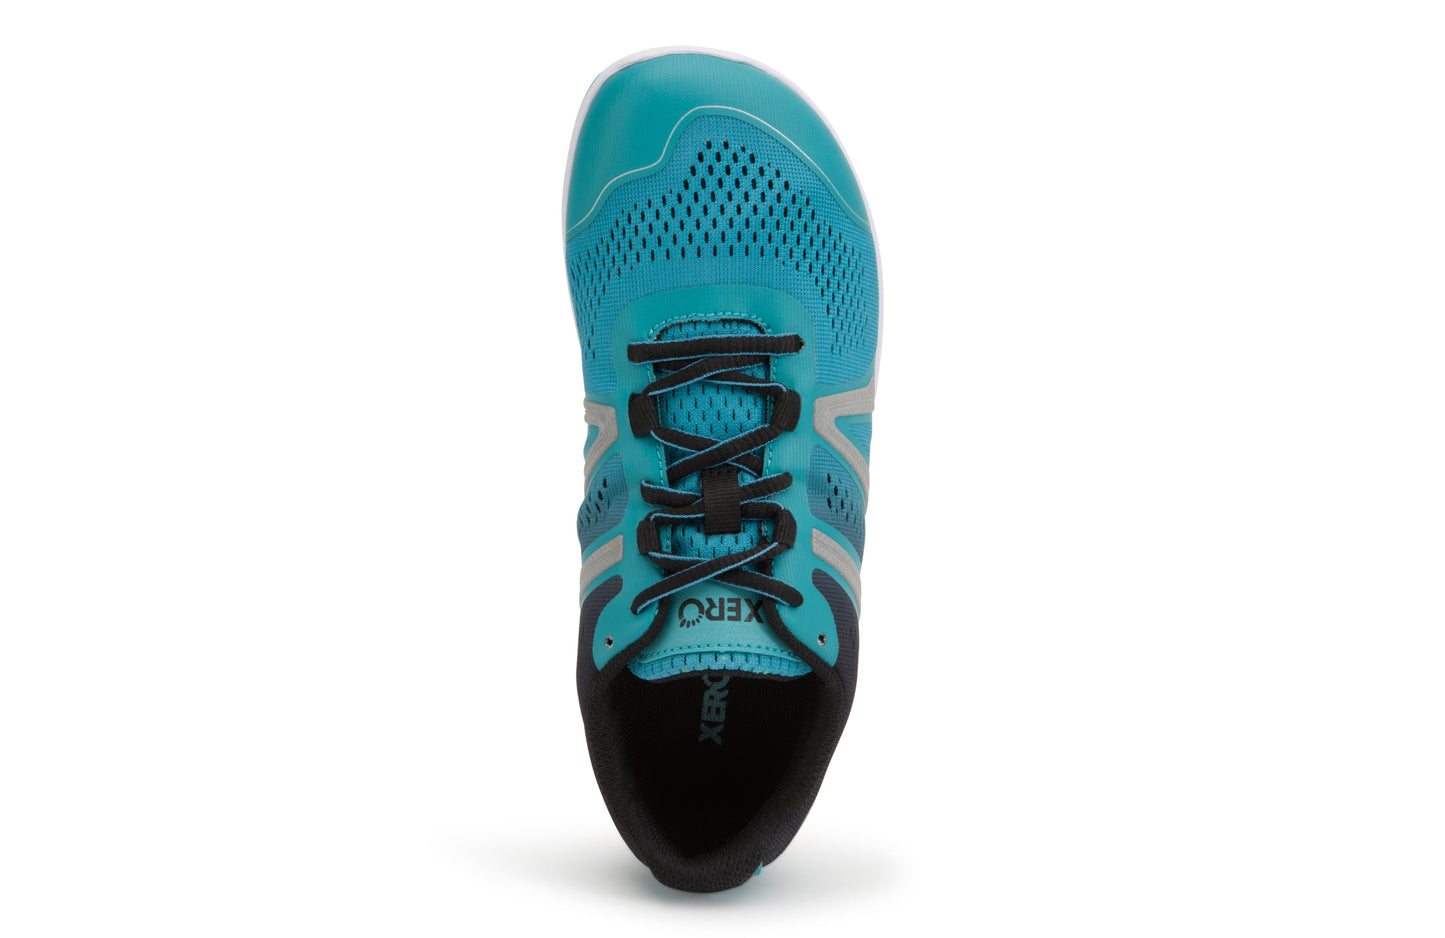 Xero Shoes HFS Womens barfods træningssko/løbesko til kvinder i farven porcelain blue, top